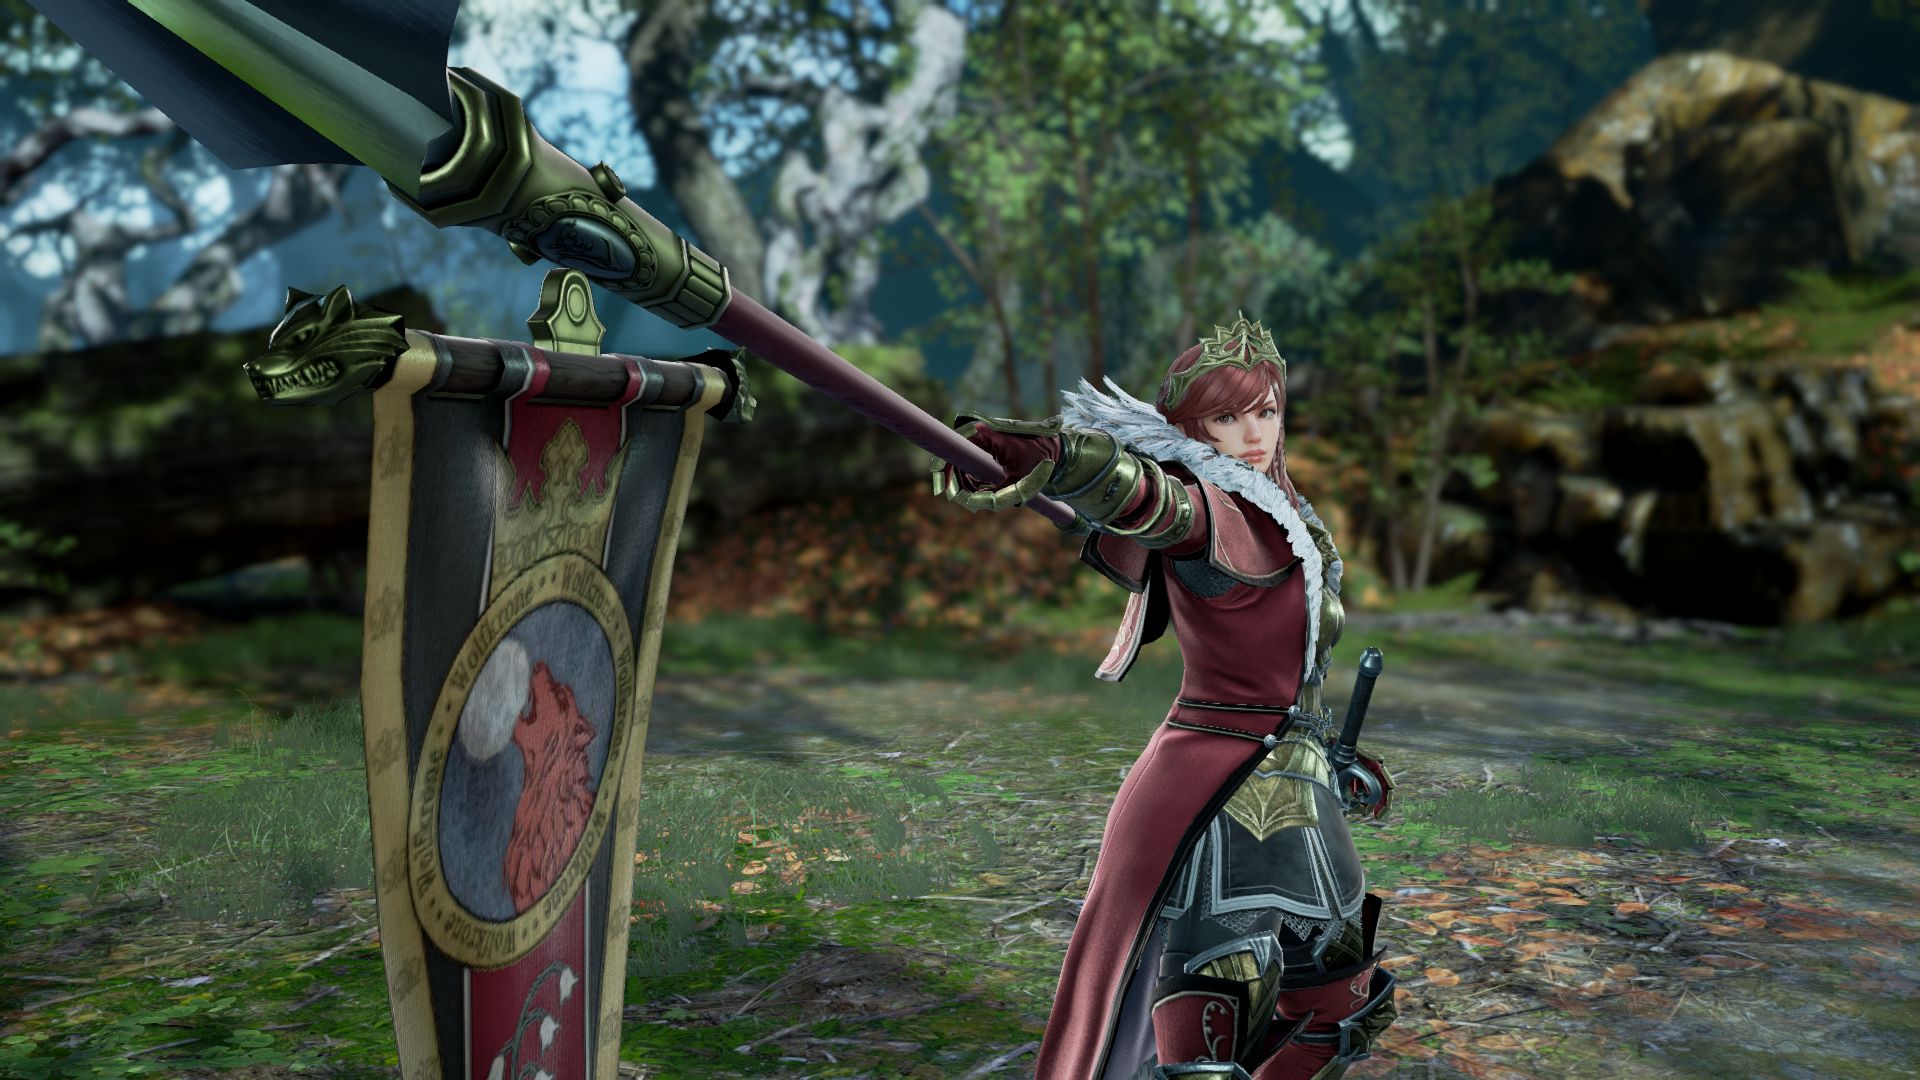 《灵魂能力6》DLC角色希尔德截图 重甲女战士强悍